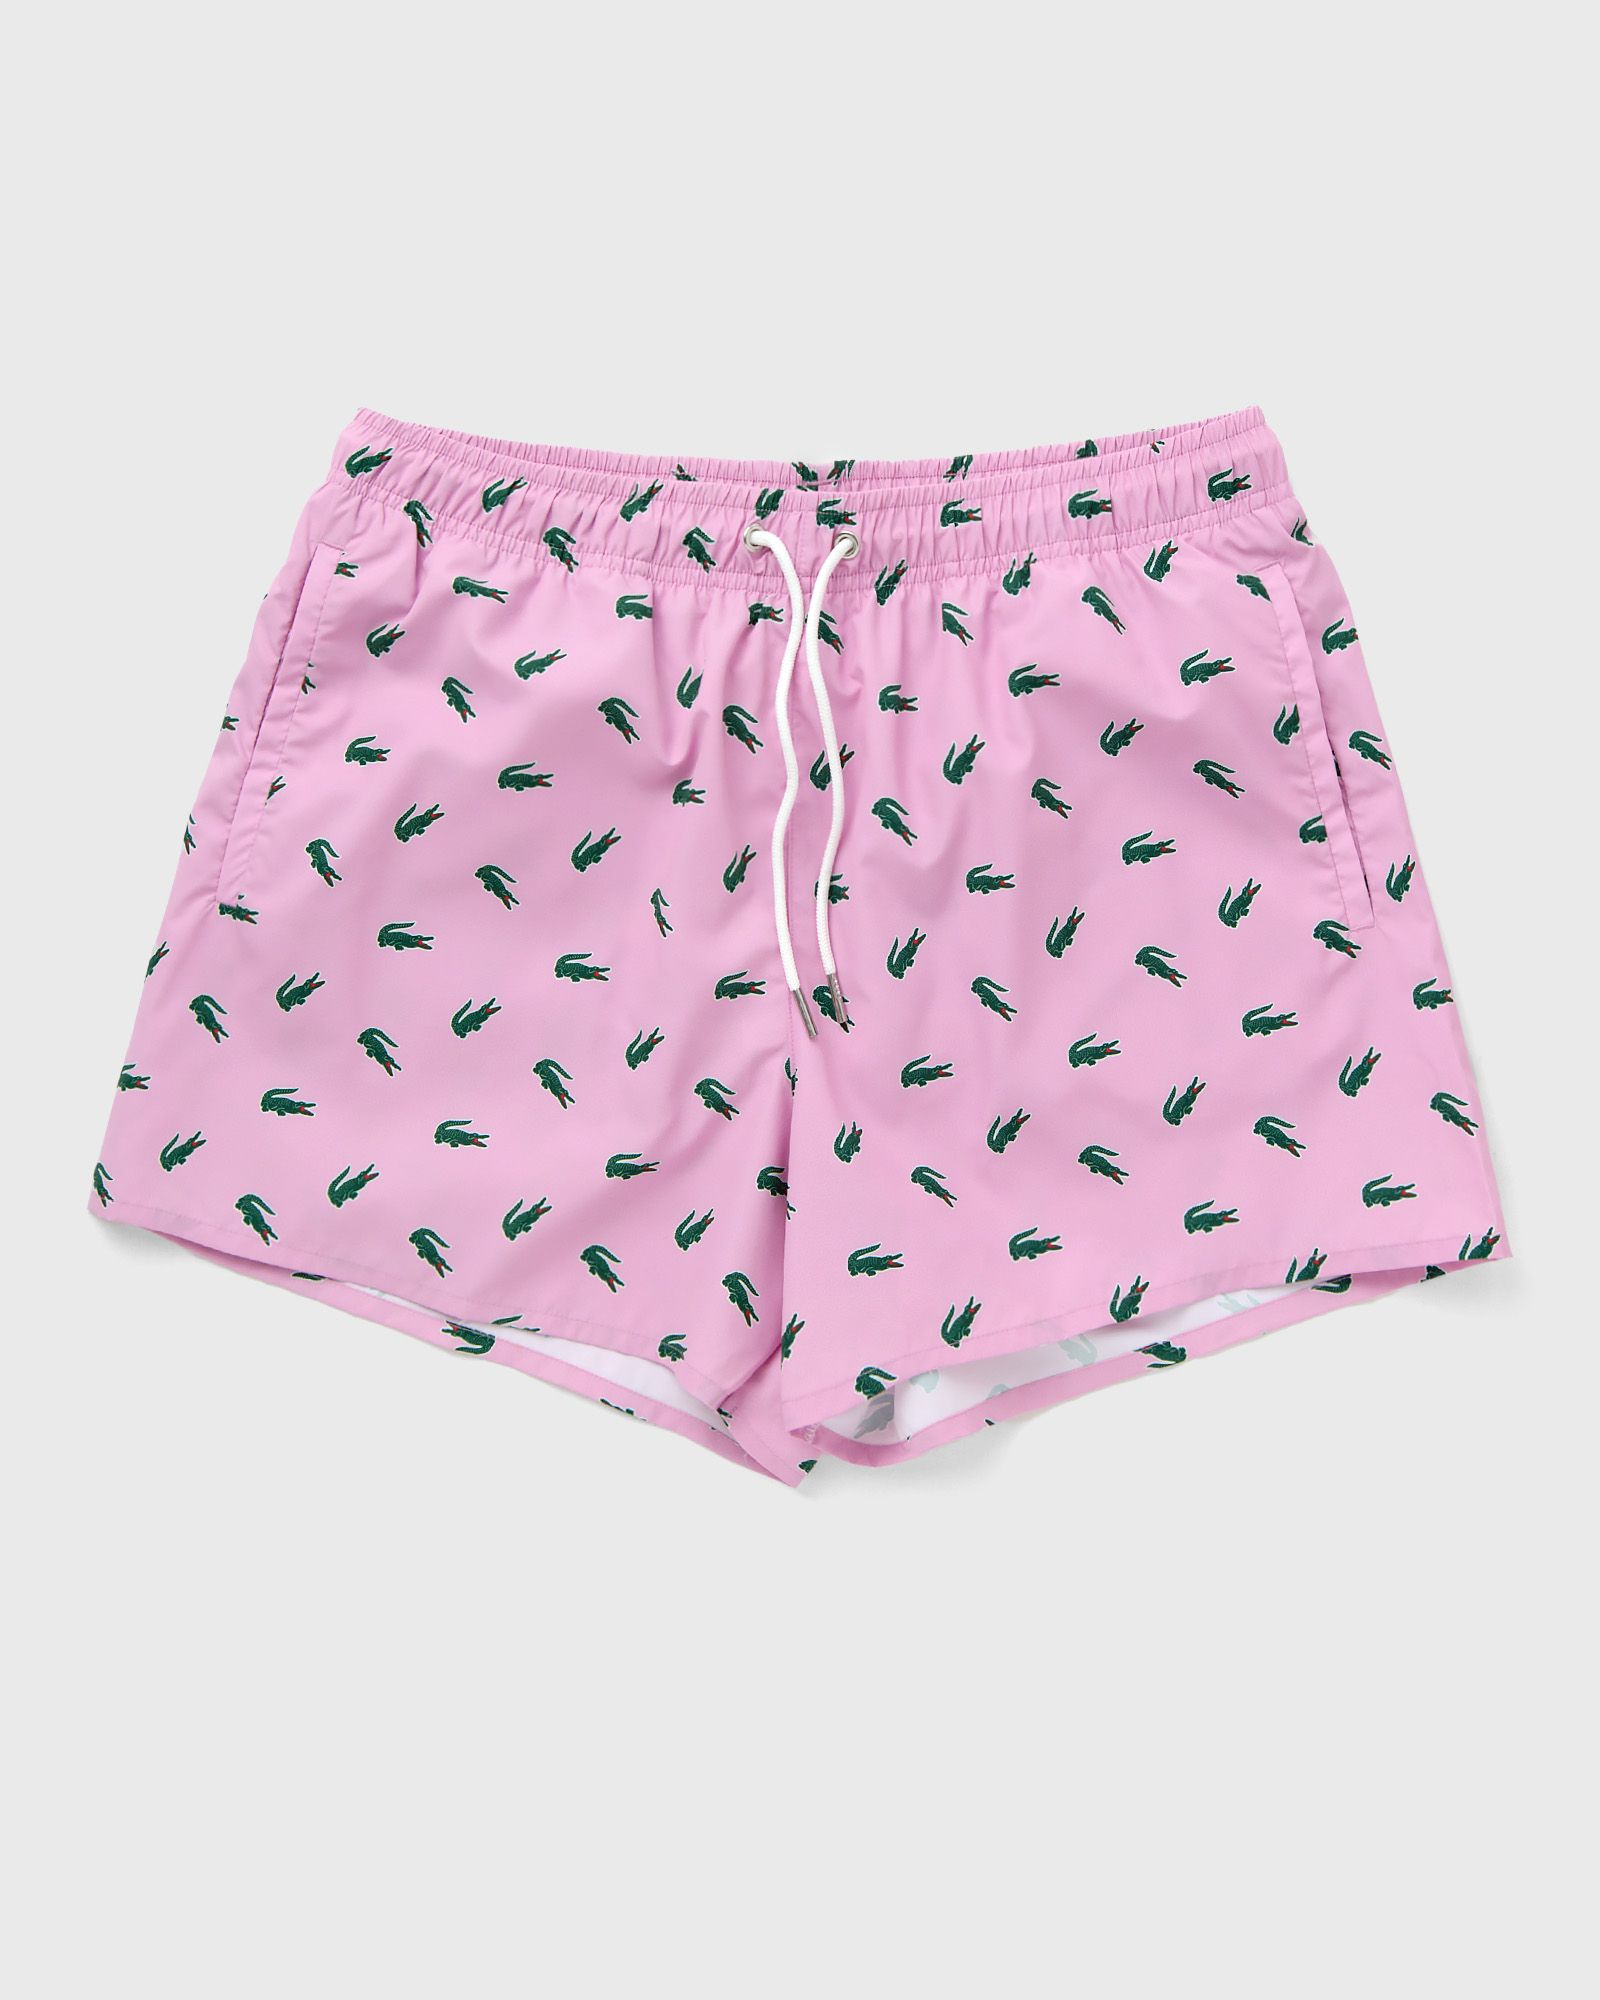 Lacoste - swimming trunks men swimwear pink in größe:xl